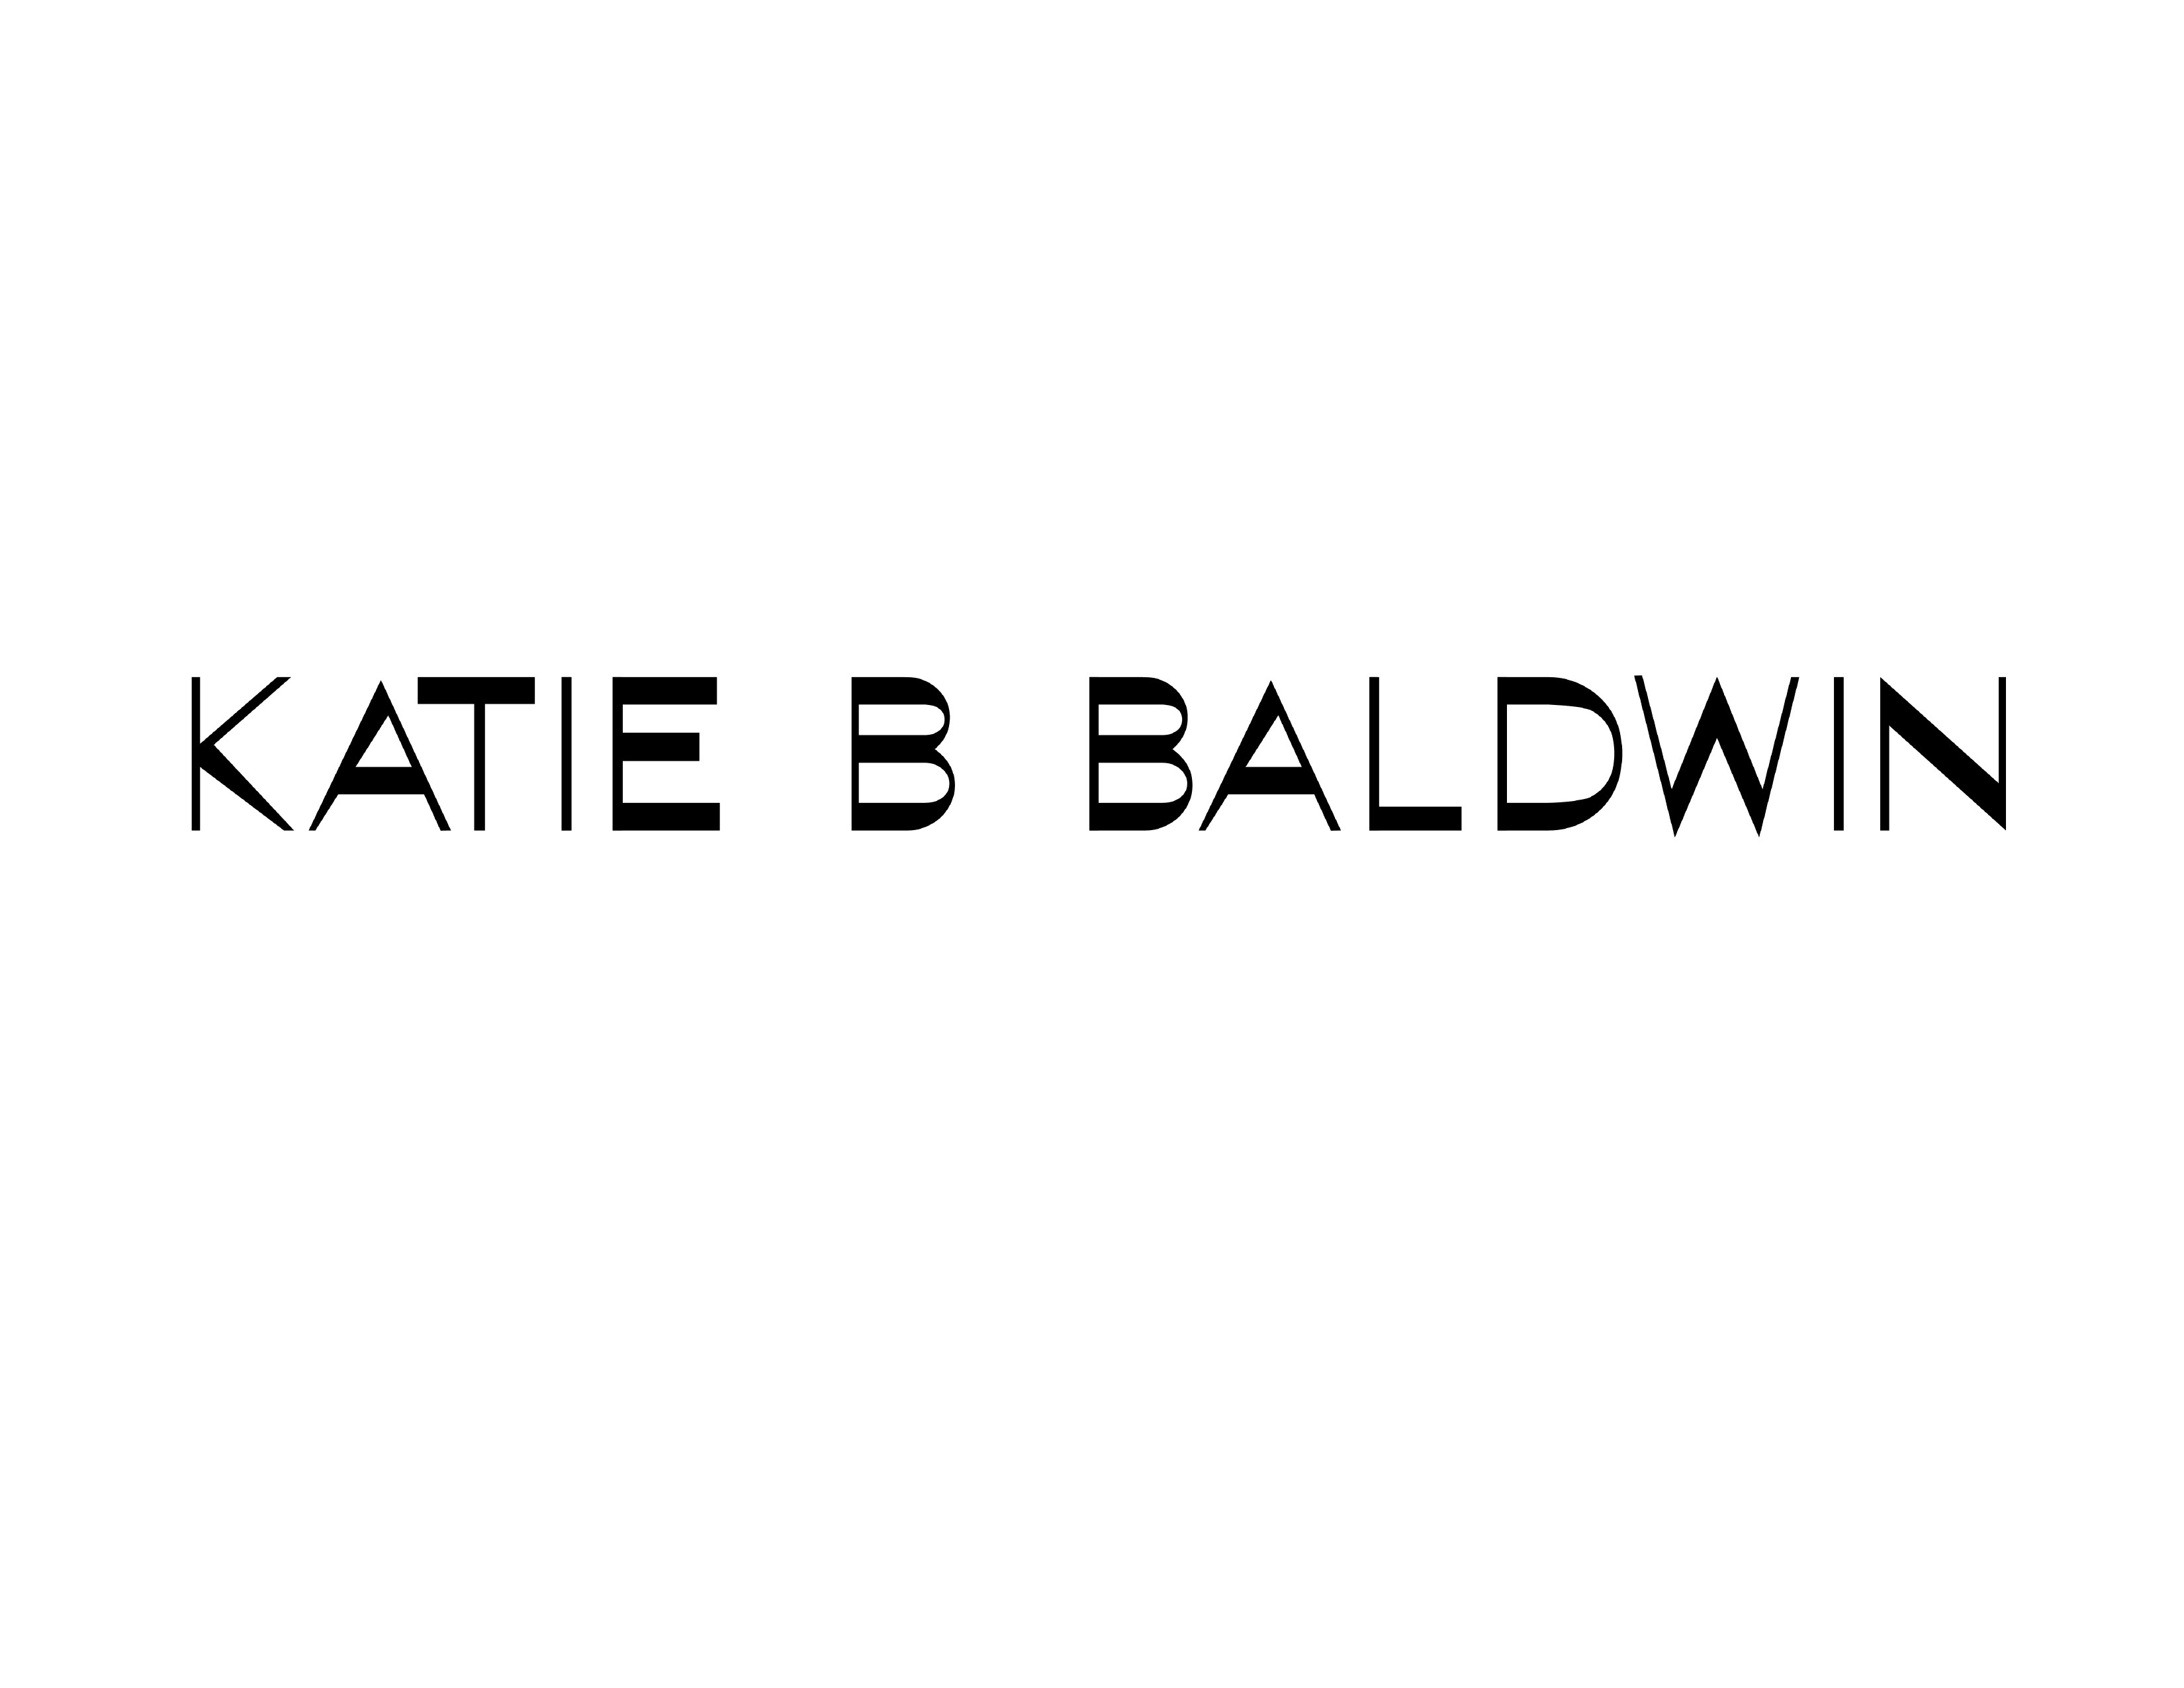 Katie Baldwin